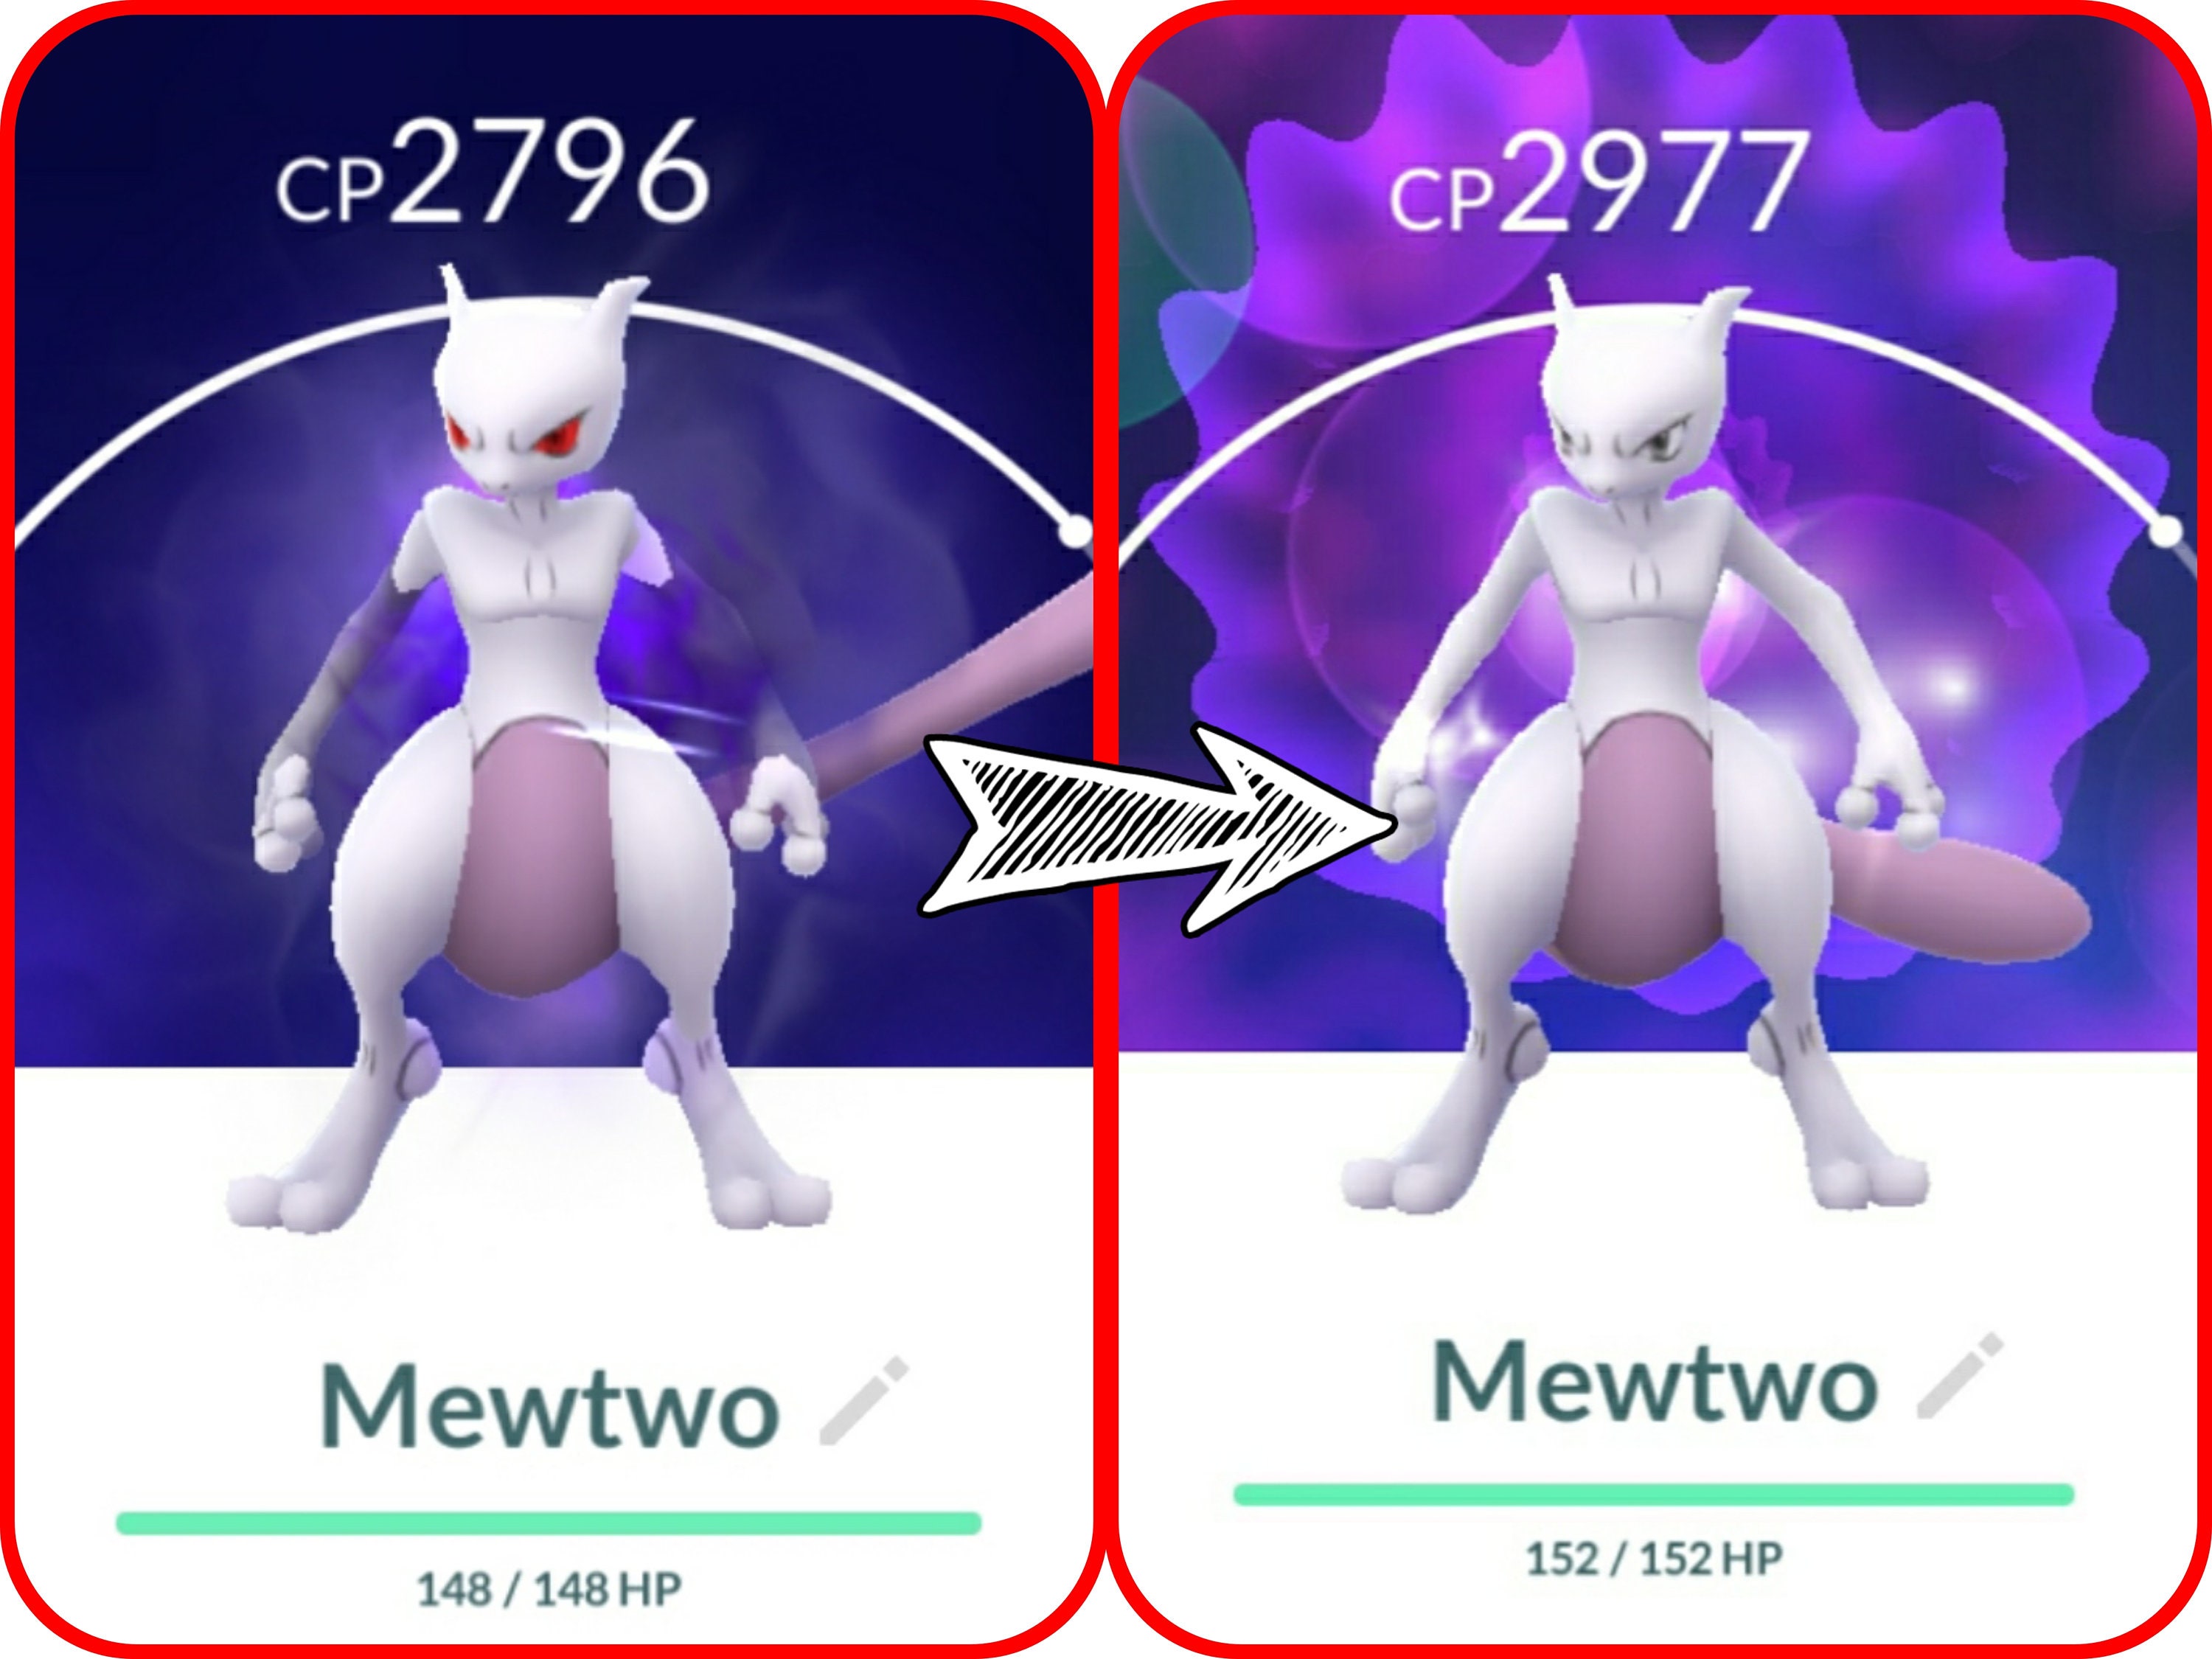 Pokémon Go - Mewtwo de armadura - data de lançamento, counters e